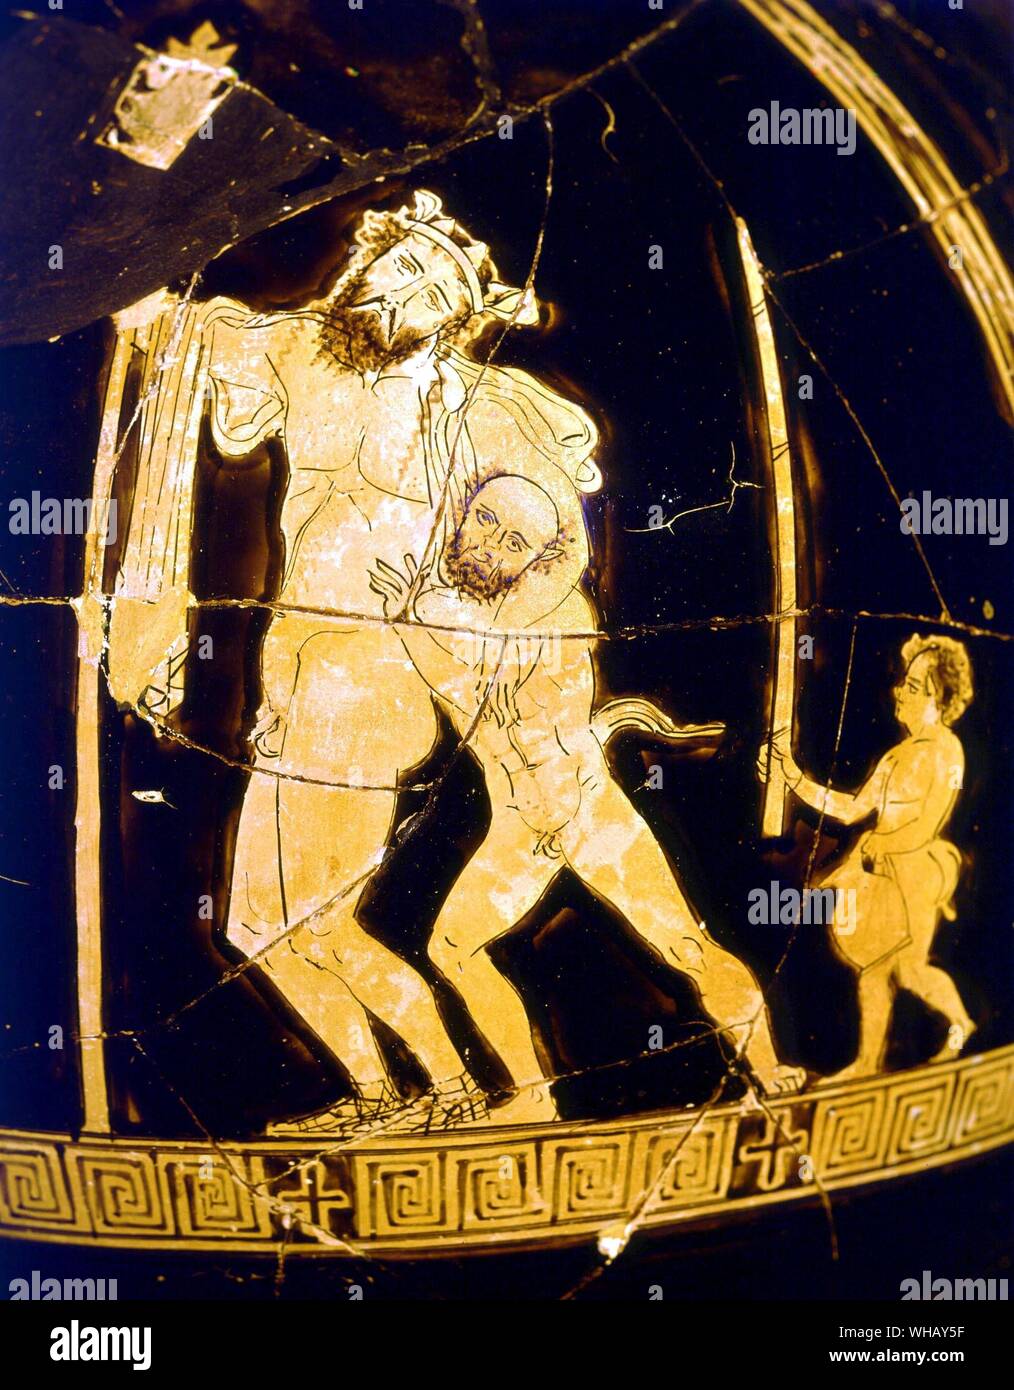 Dionysische vase späten 5 Jahrhundert v. Chr.. Dionysos einfach betrunken. Männer von Athen von Rex Warner, Seite 185. Stockfoto